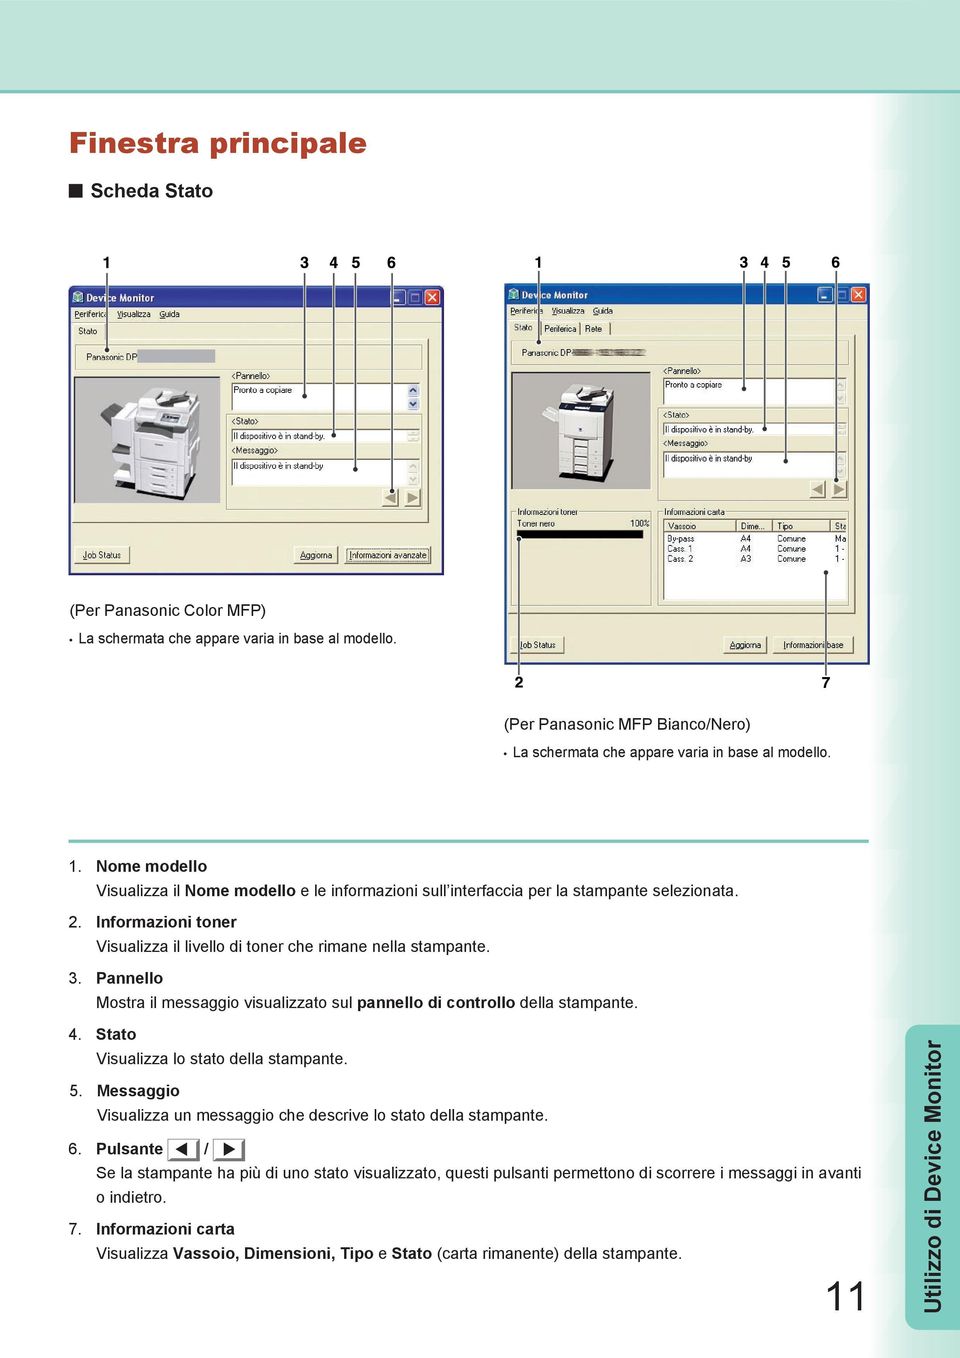 Pannello Mostra il messaggio visualizzato sul pannello di controllo della stampante. 4. Stato Visualizza lo stato della stampante. 5.